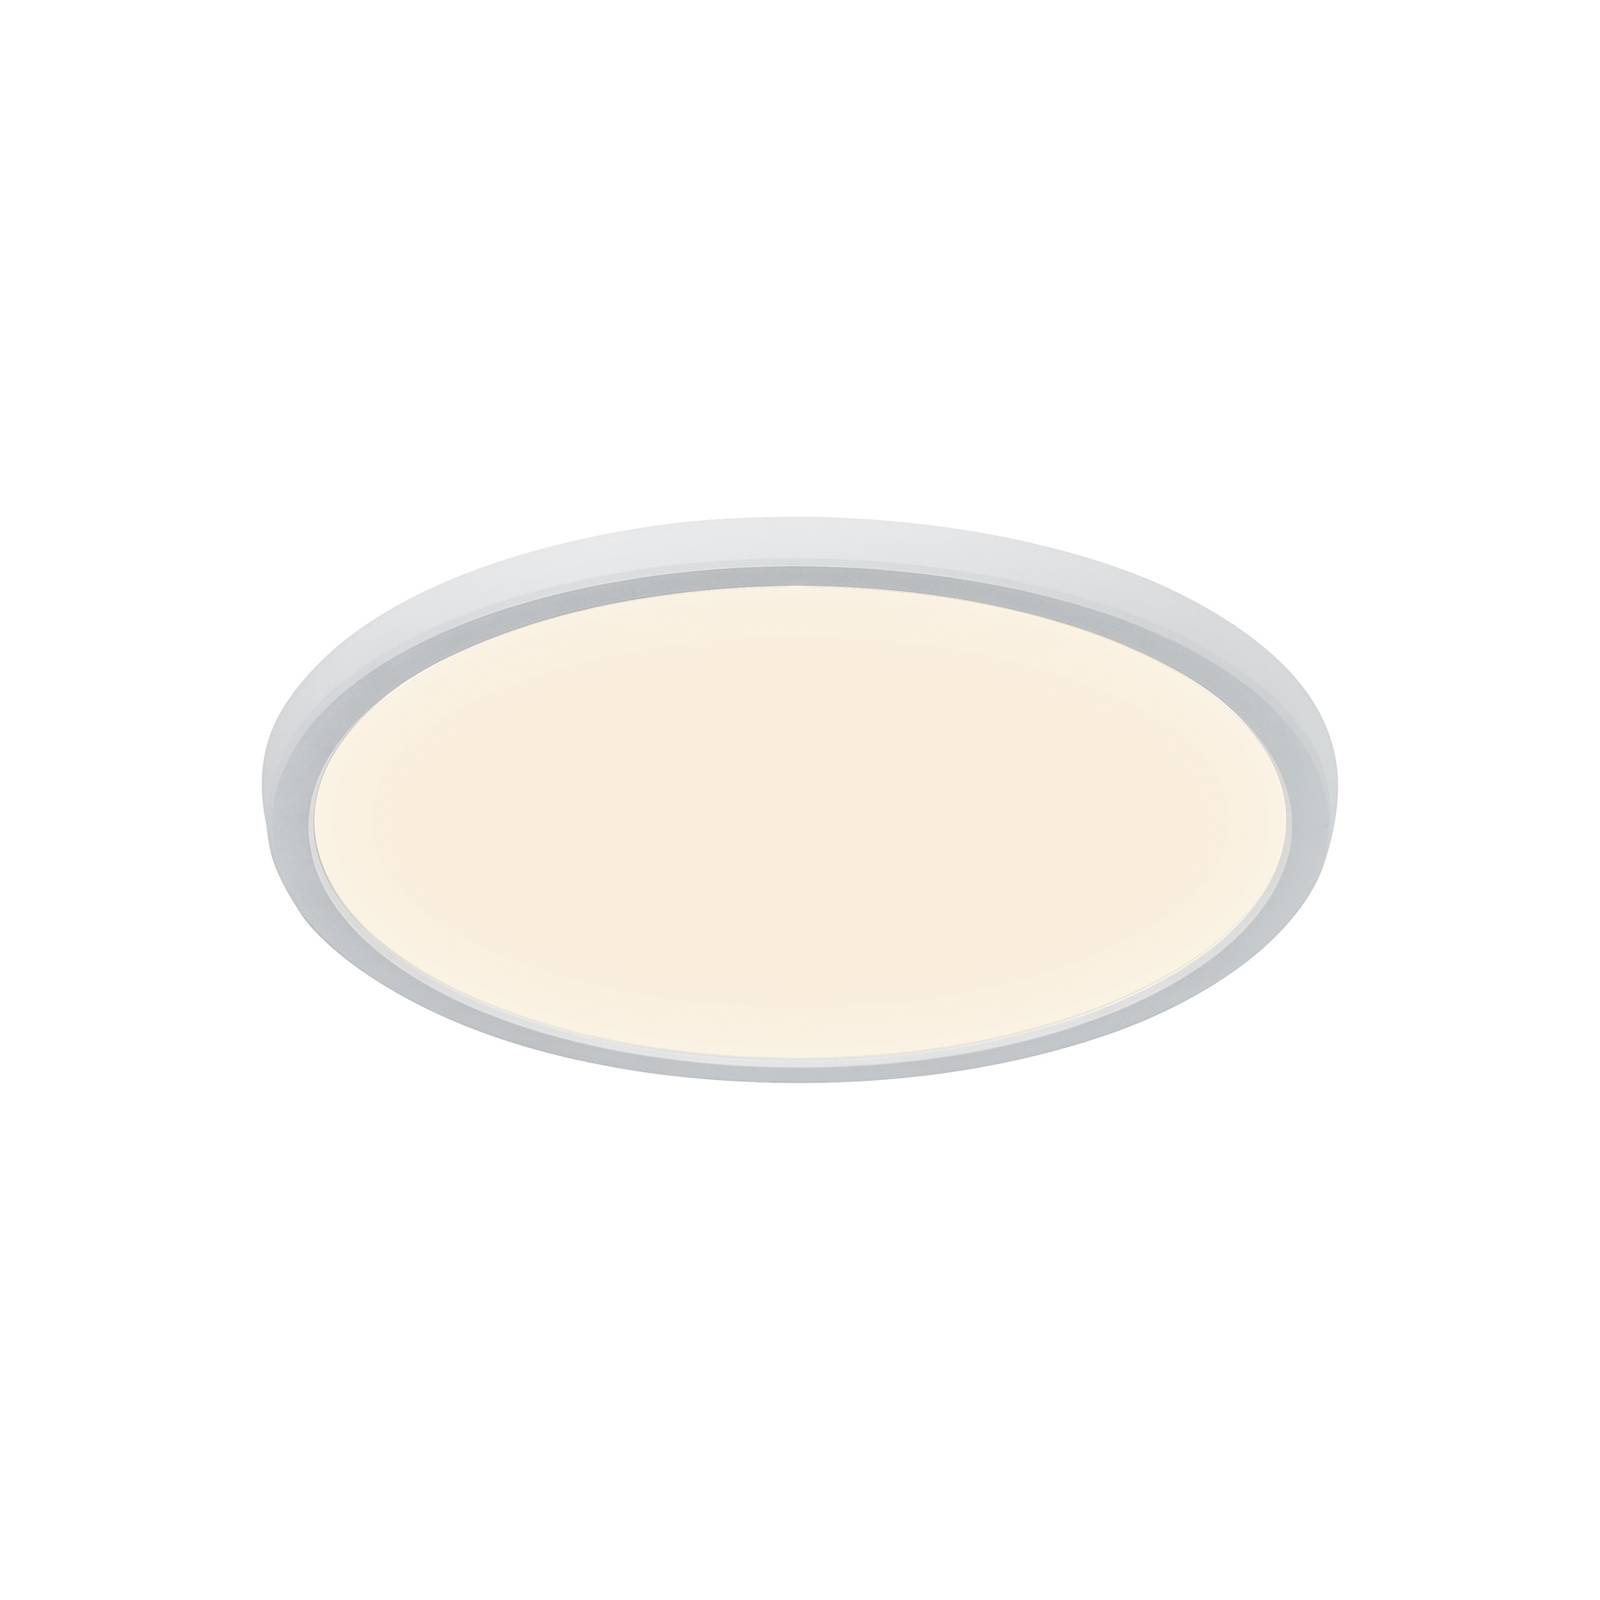 Nordlux LED-Deckenleuchte Oja Smart, weiß, Ø 29 cm